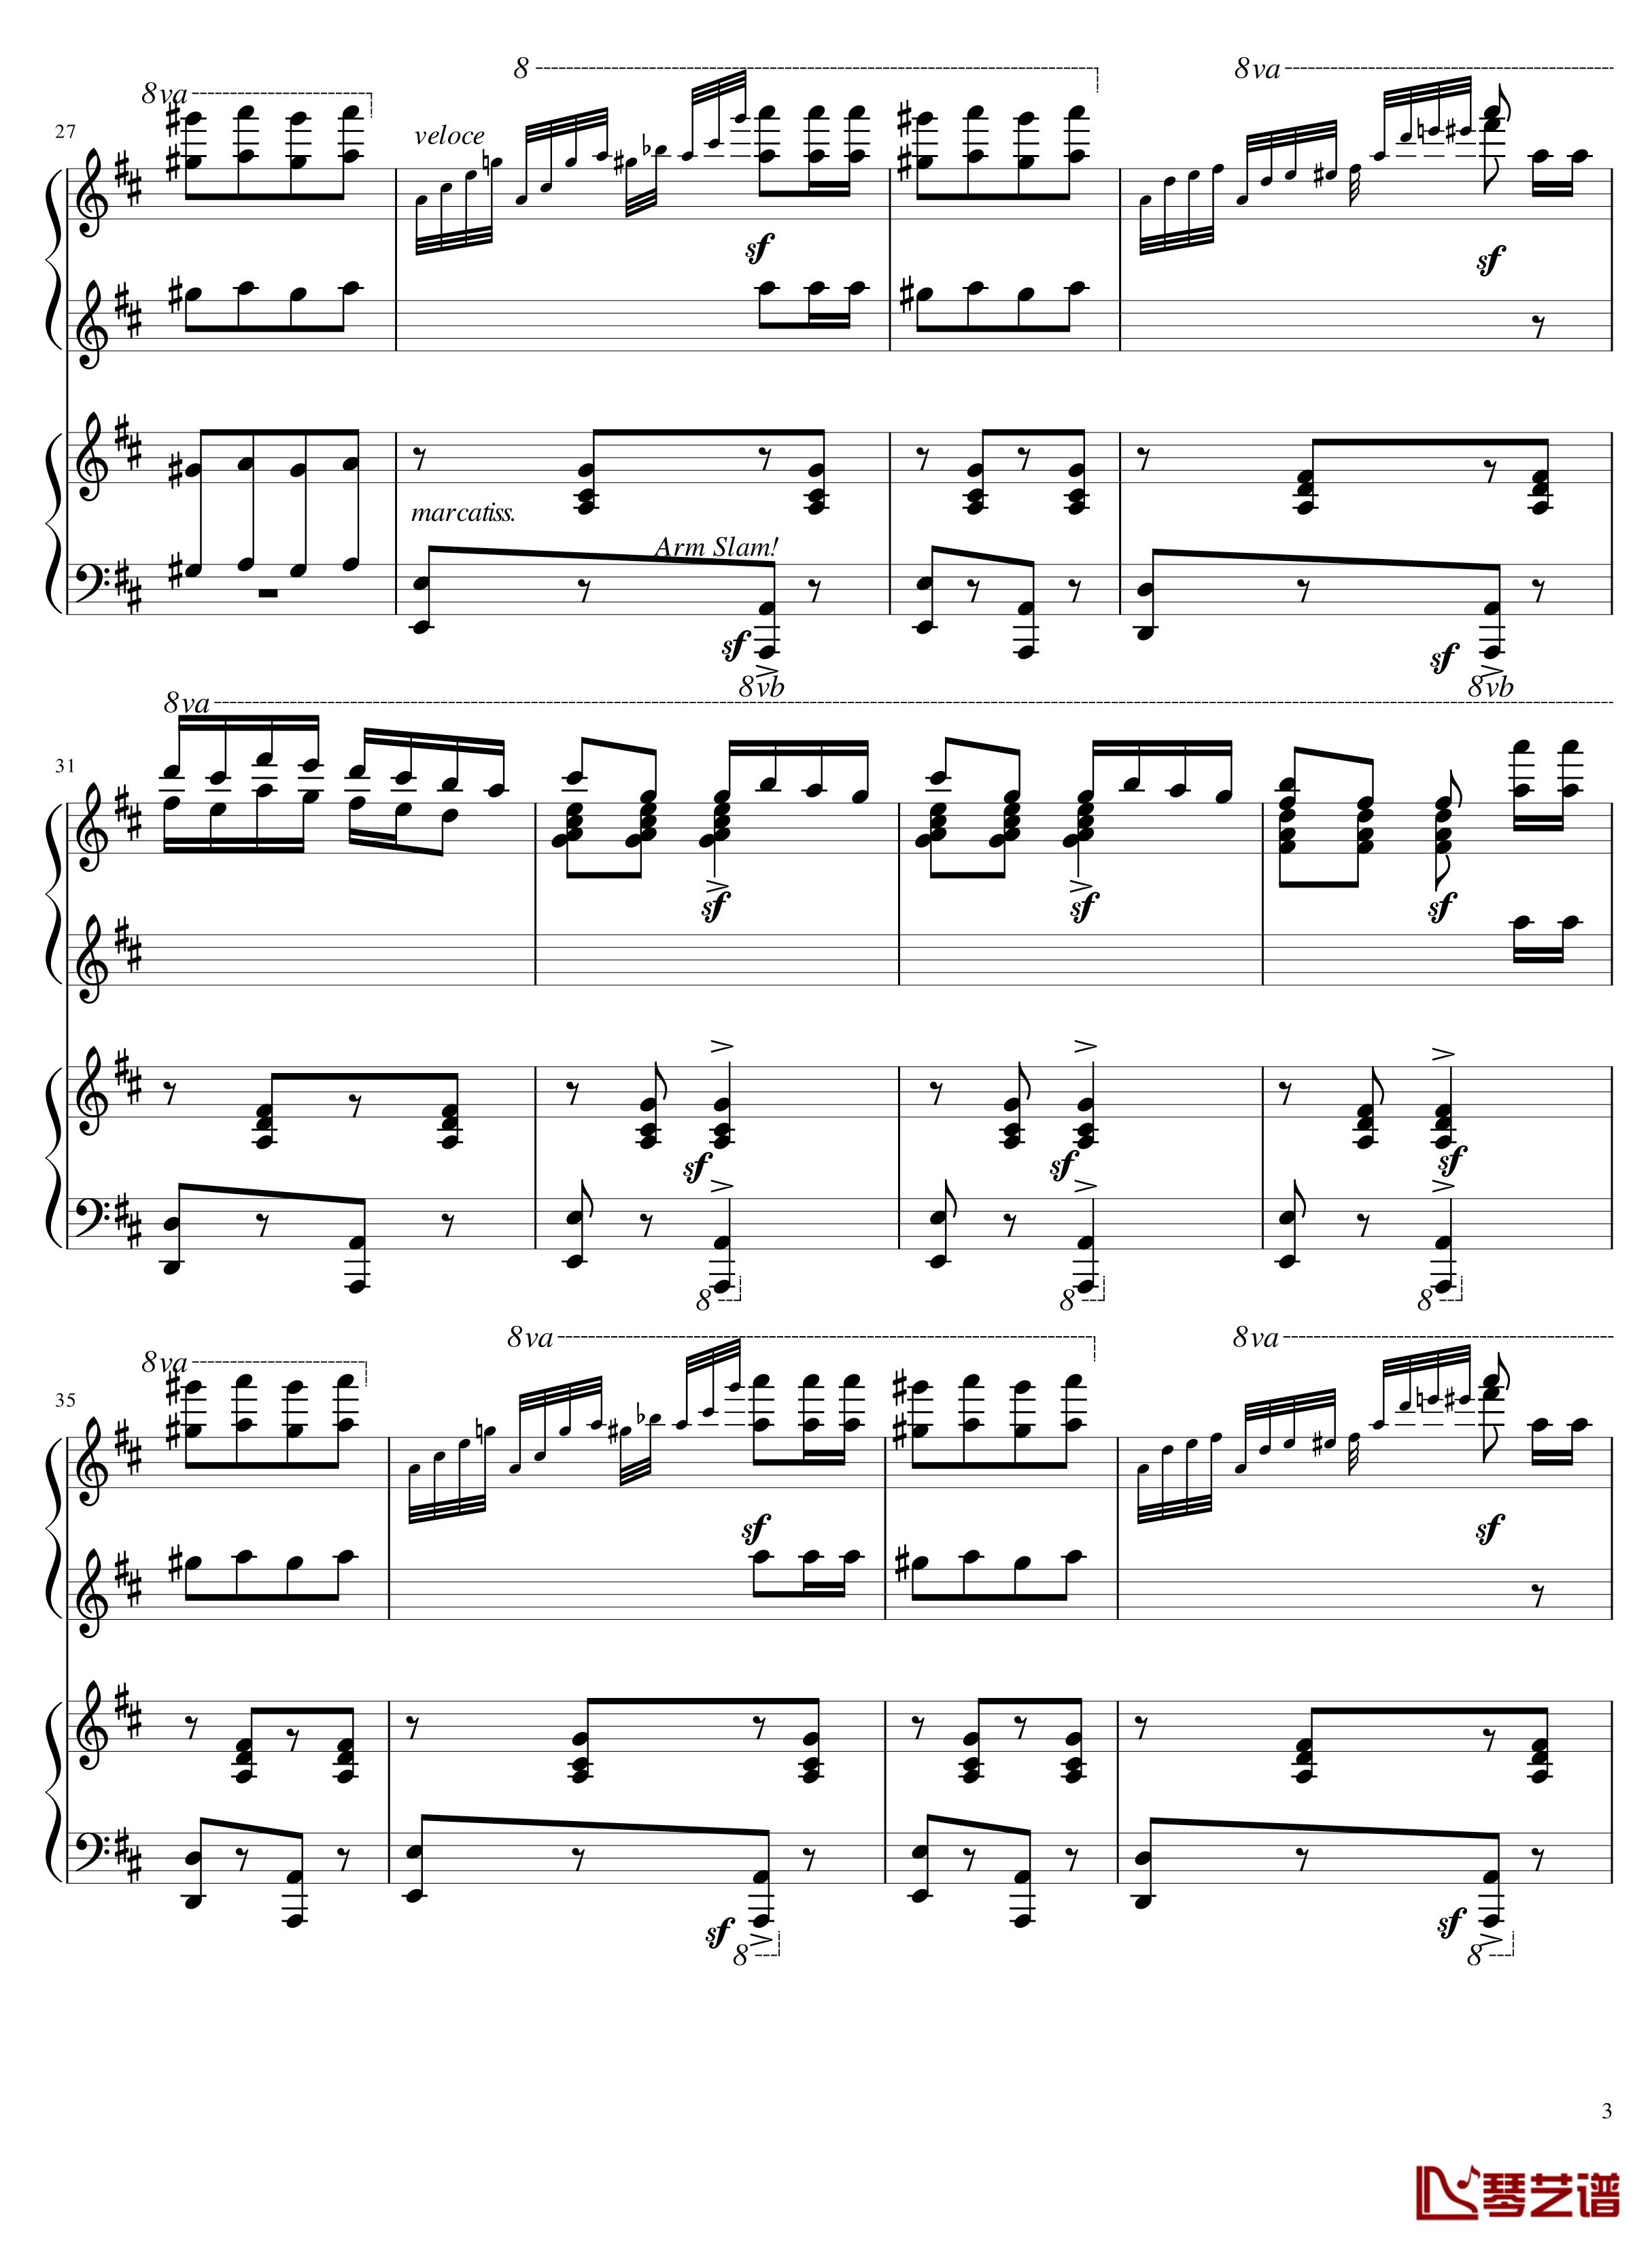 Italian Polka钢琴谱-意大利波尔卡-拉赫马尼若夫3